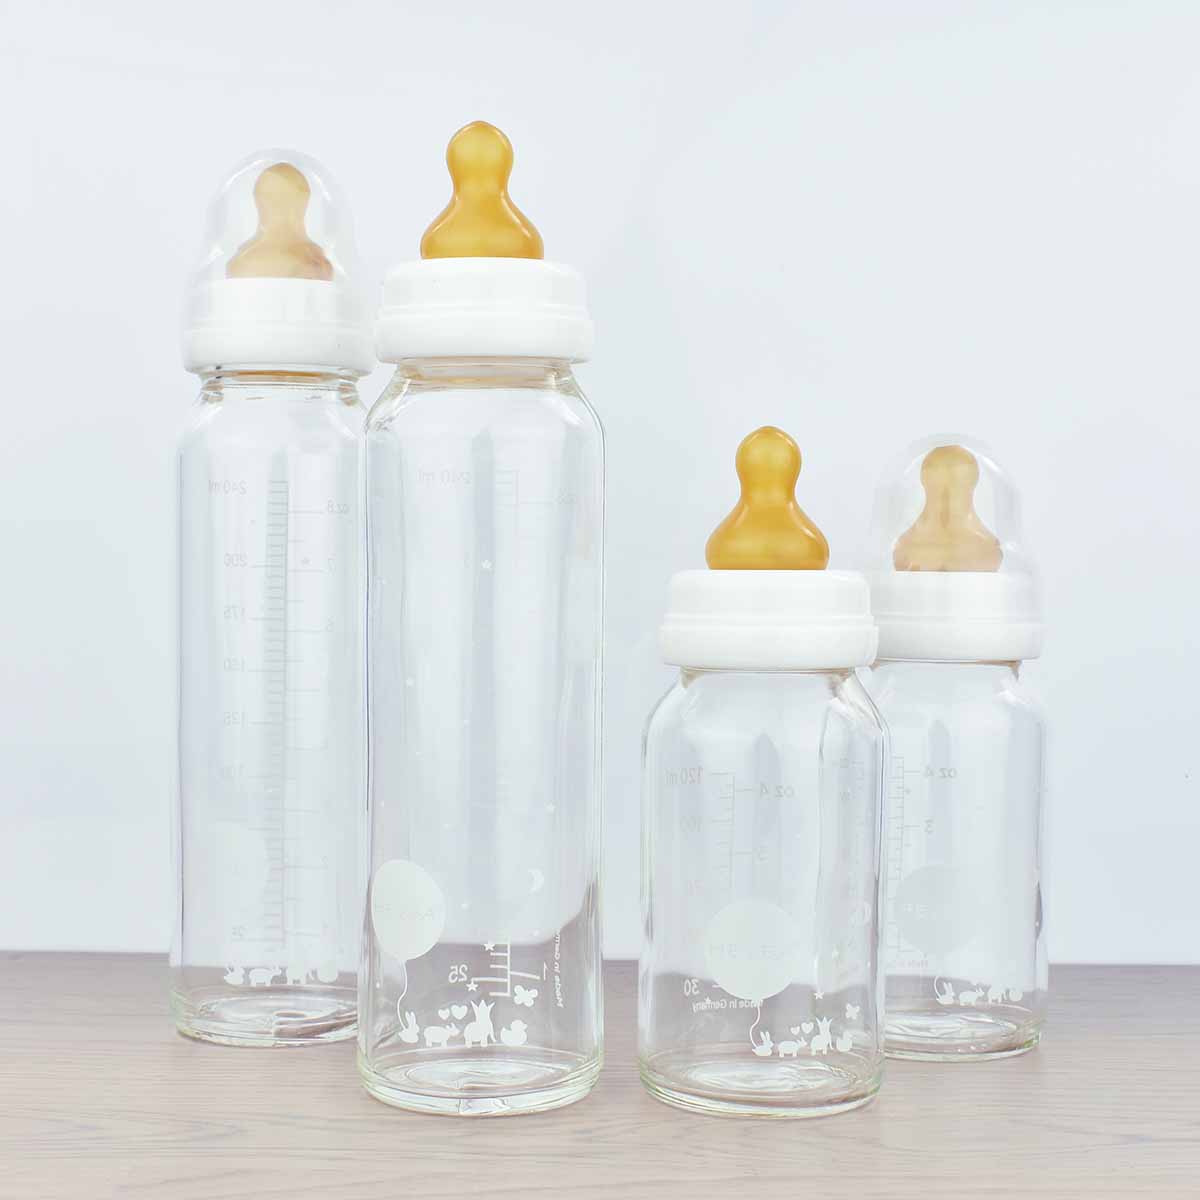 aanvulling Bijproduct Van Glazen babyfles / baby drinkfles 120ml Hevea | MIISHA Eco Shop